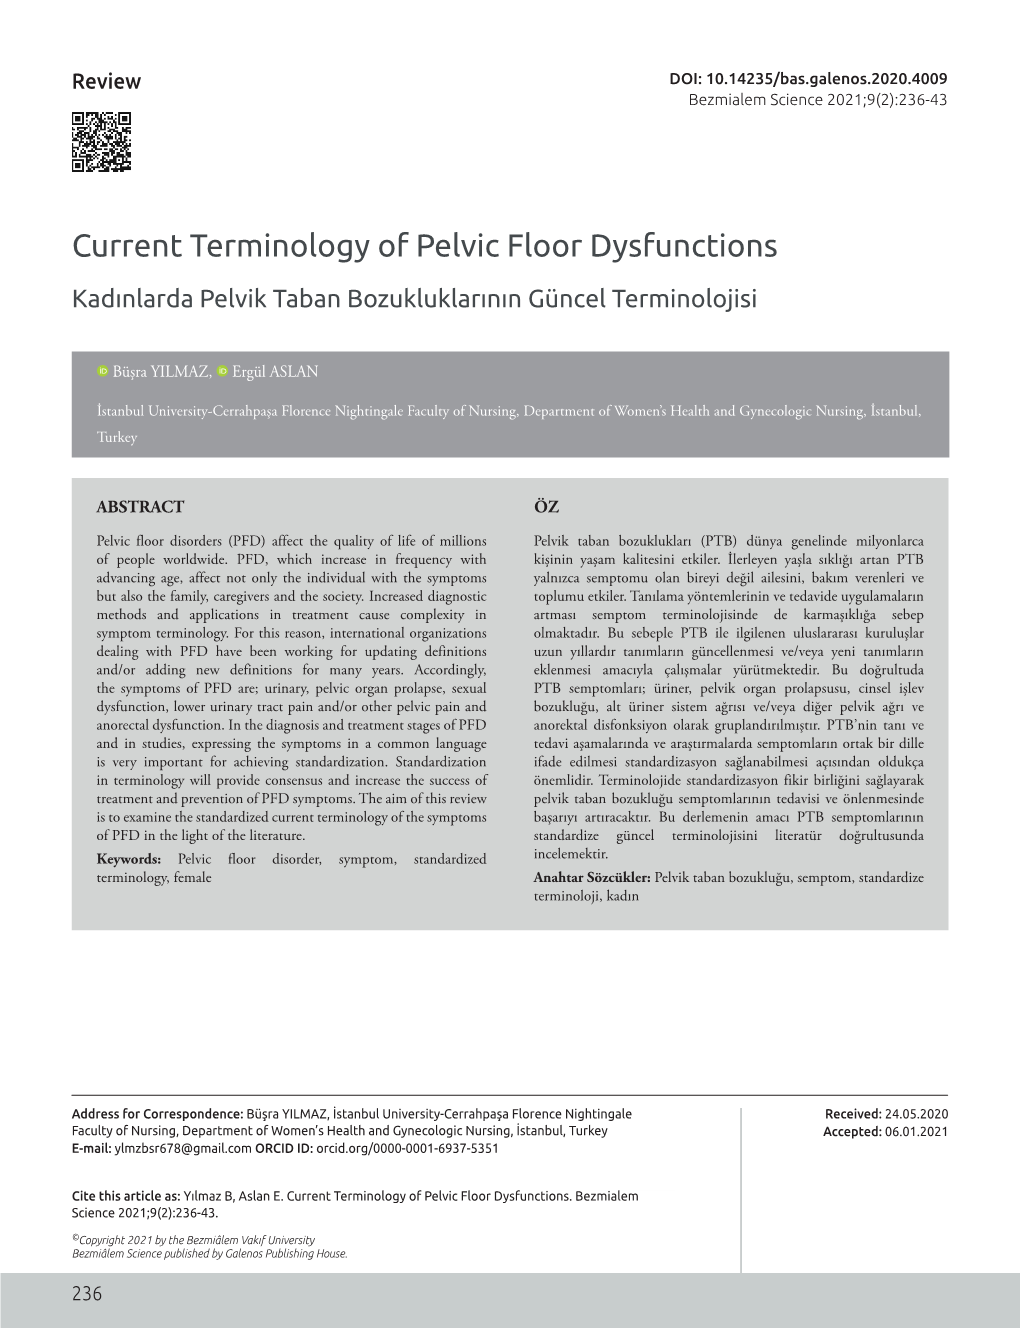 Current Terminology of Pelvic Floor Dysfunctions Kadınlarda Pelvik Taban Bozukluklarının Güncel Terminolojisi